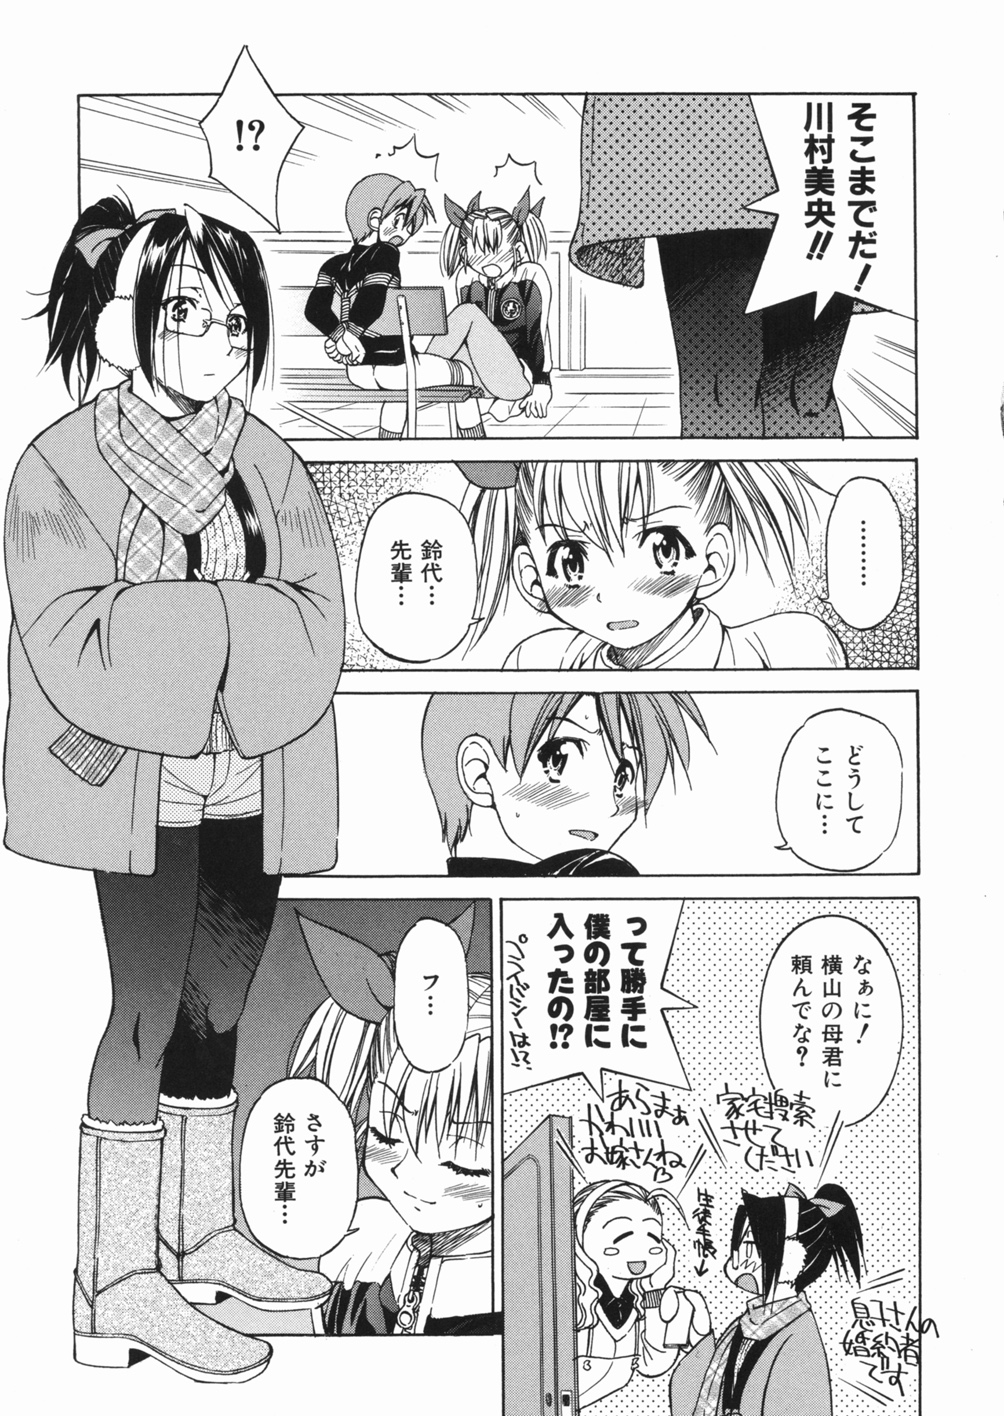 [Inoue Yoshihisa] Sunao page 47 full